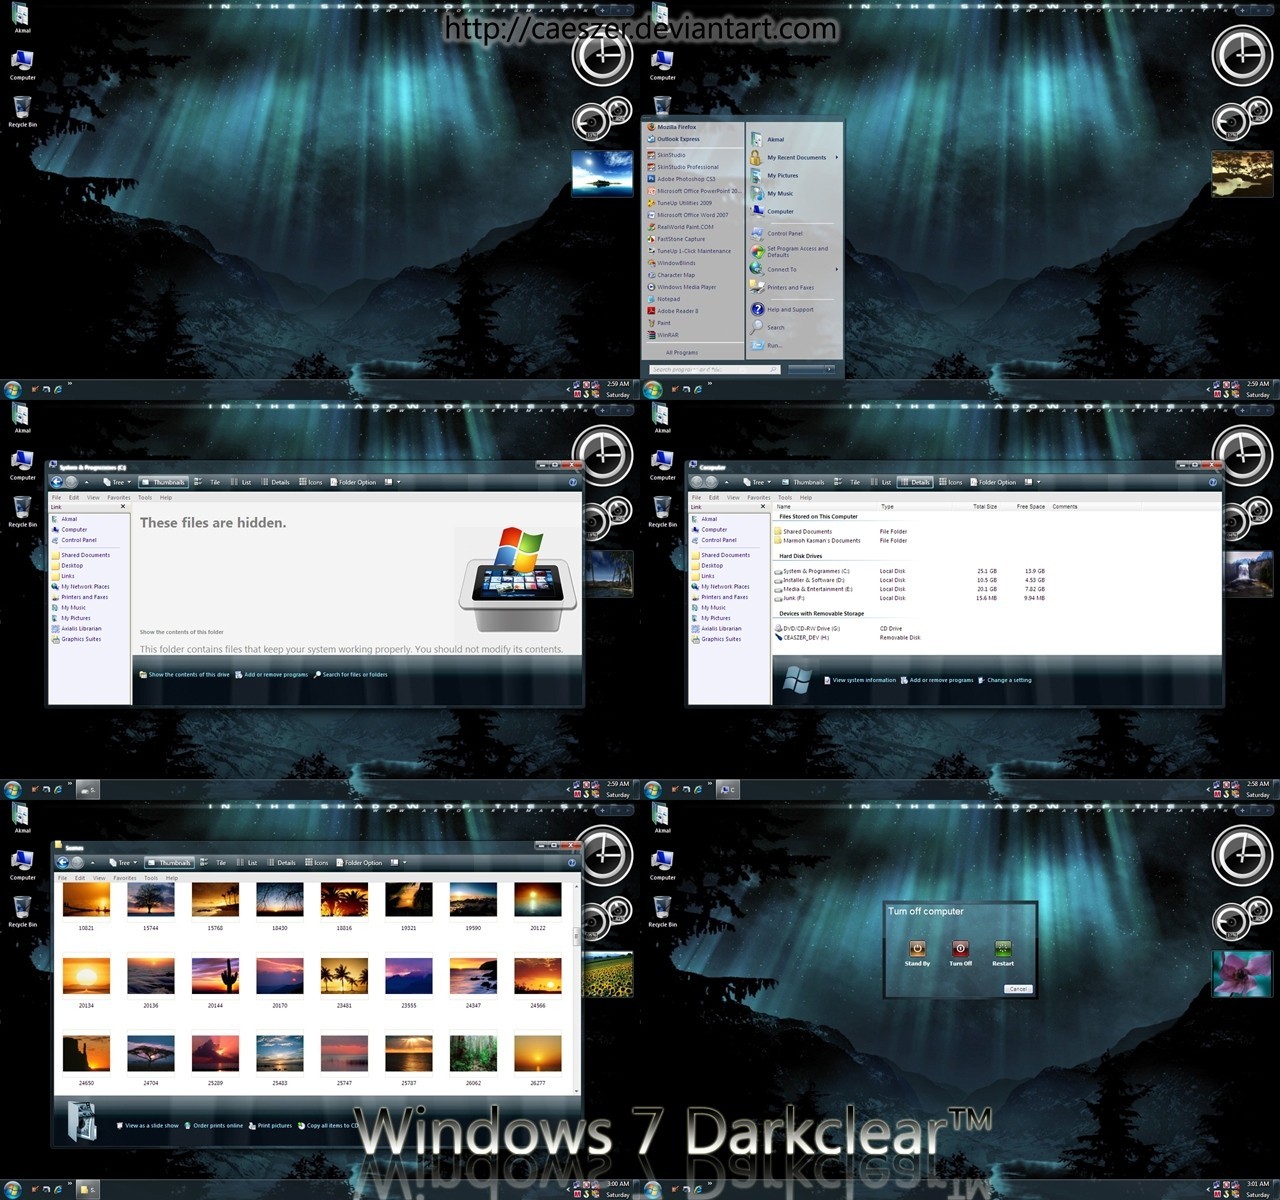 Windows 7 Darkclear for XP 1.0